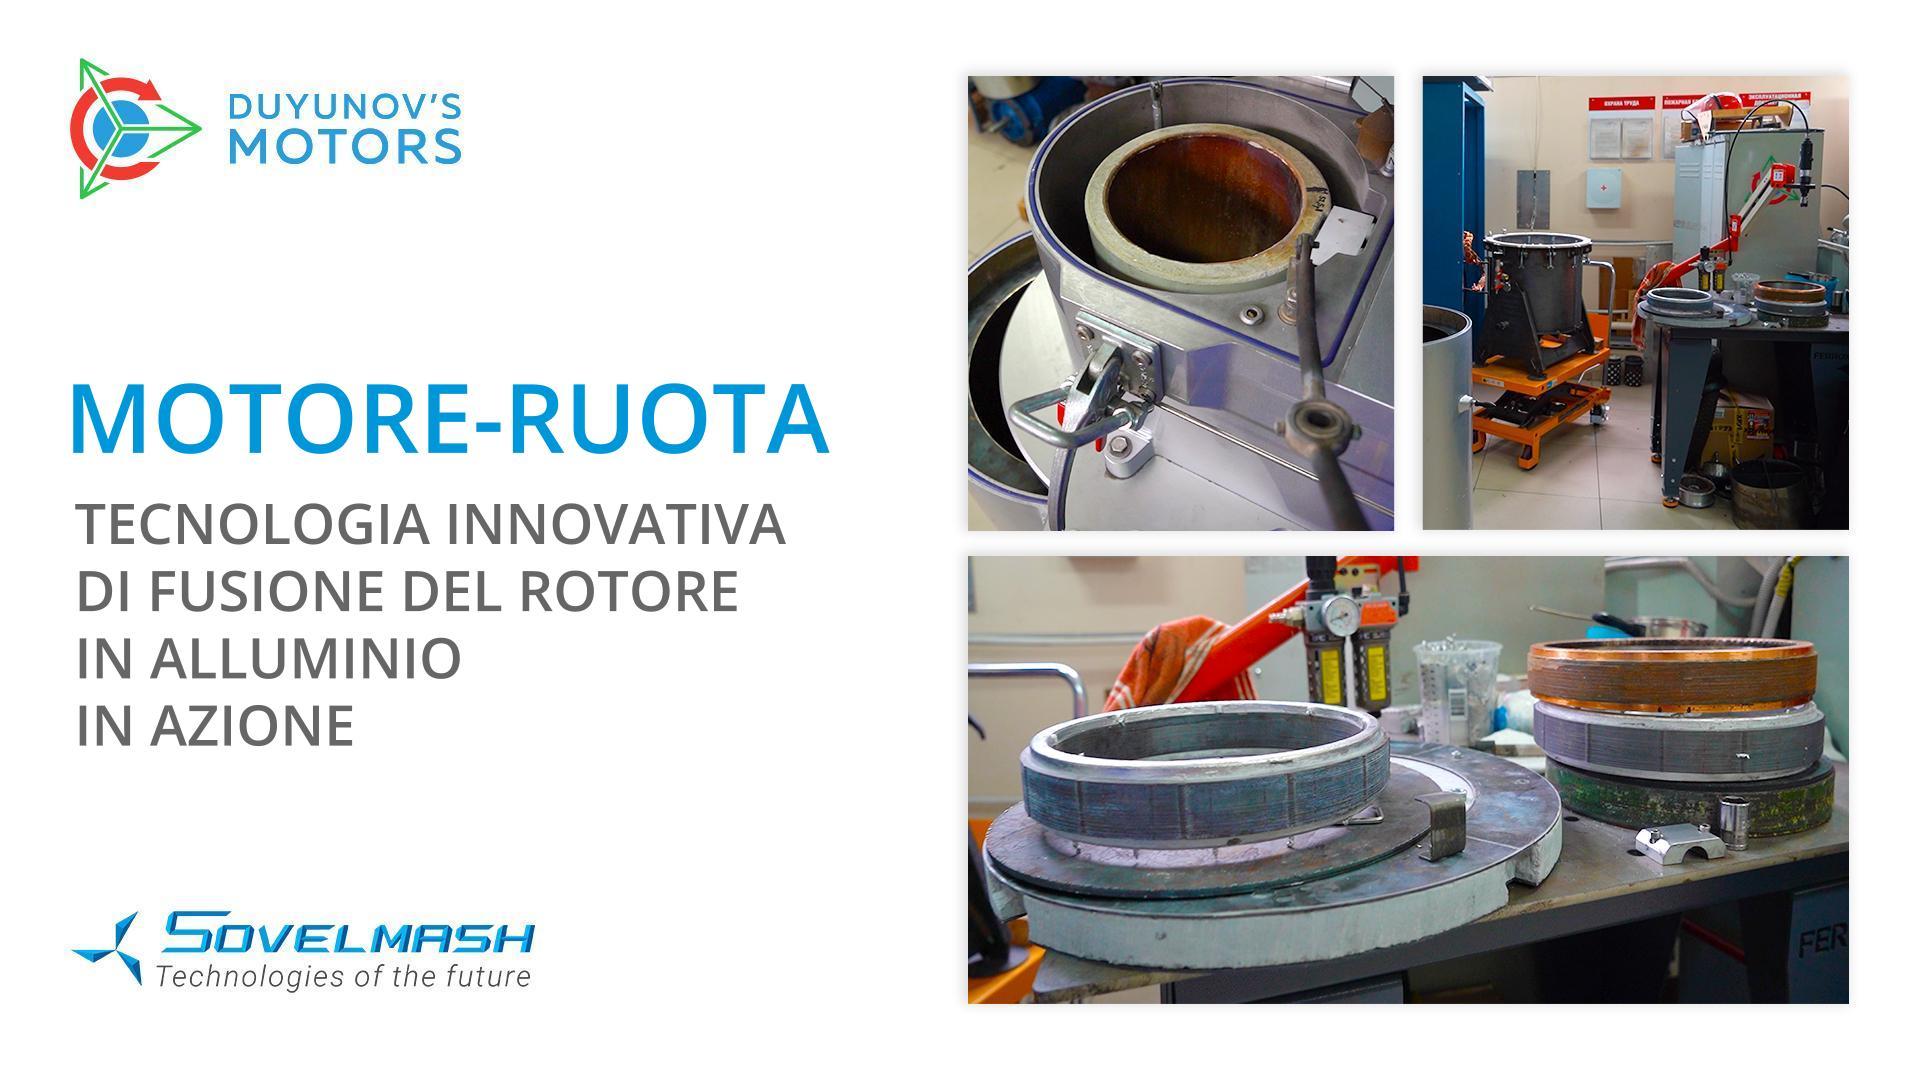 Motore-ruota: tecnologia innovativa di fusione del rotore in alluminio in azione